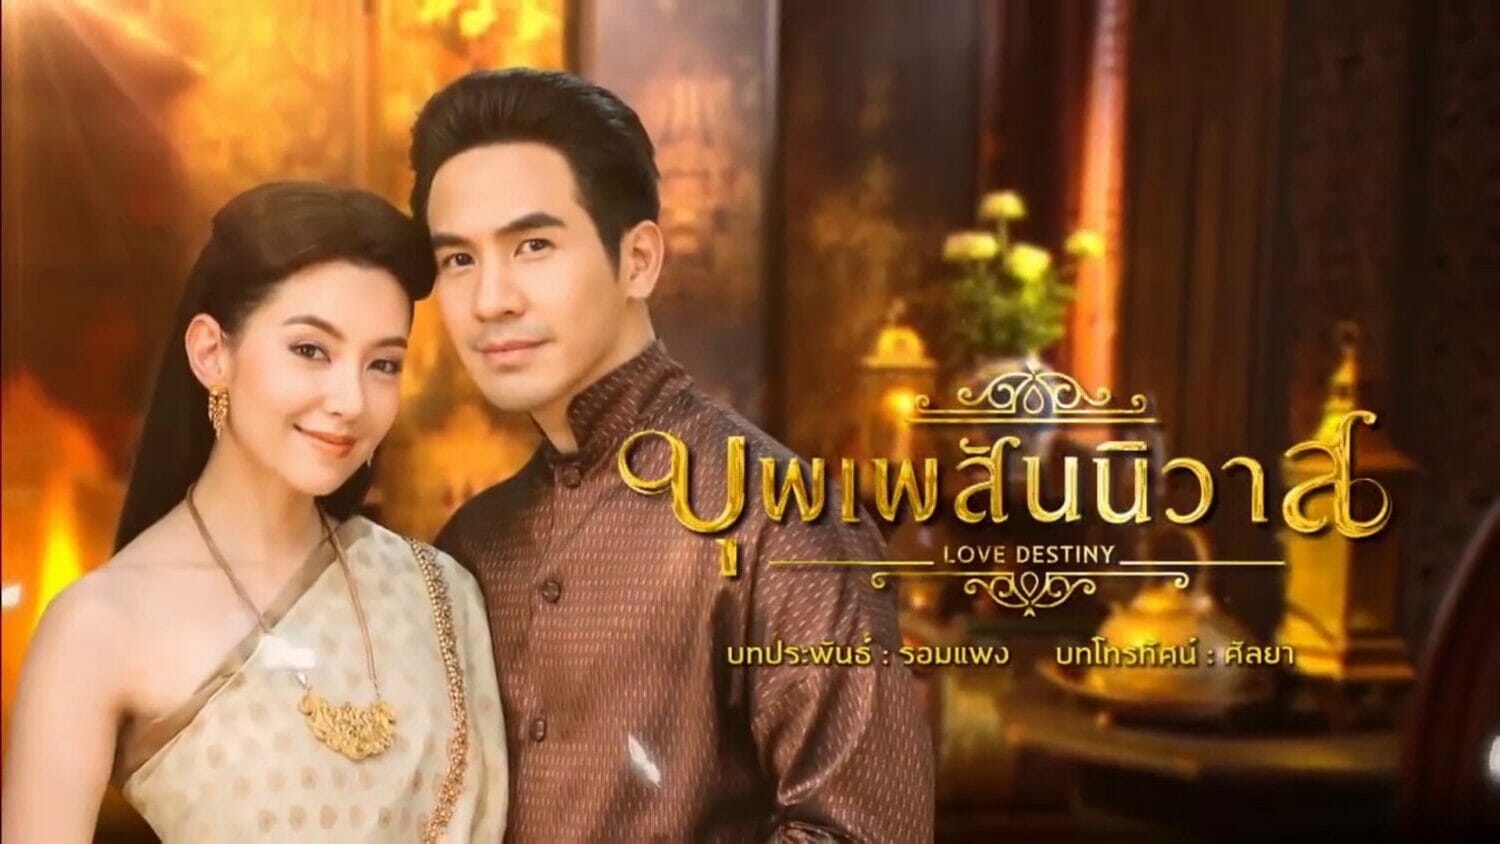 phim Thái Lan hay nhất về tình yêu - Ngược dòng thời gian để yêu anh 